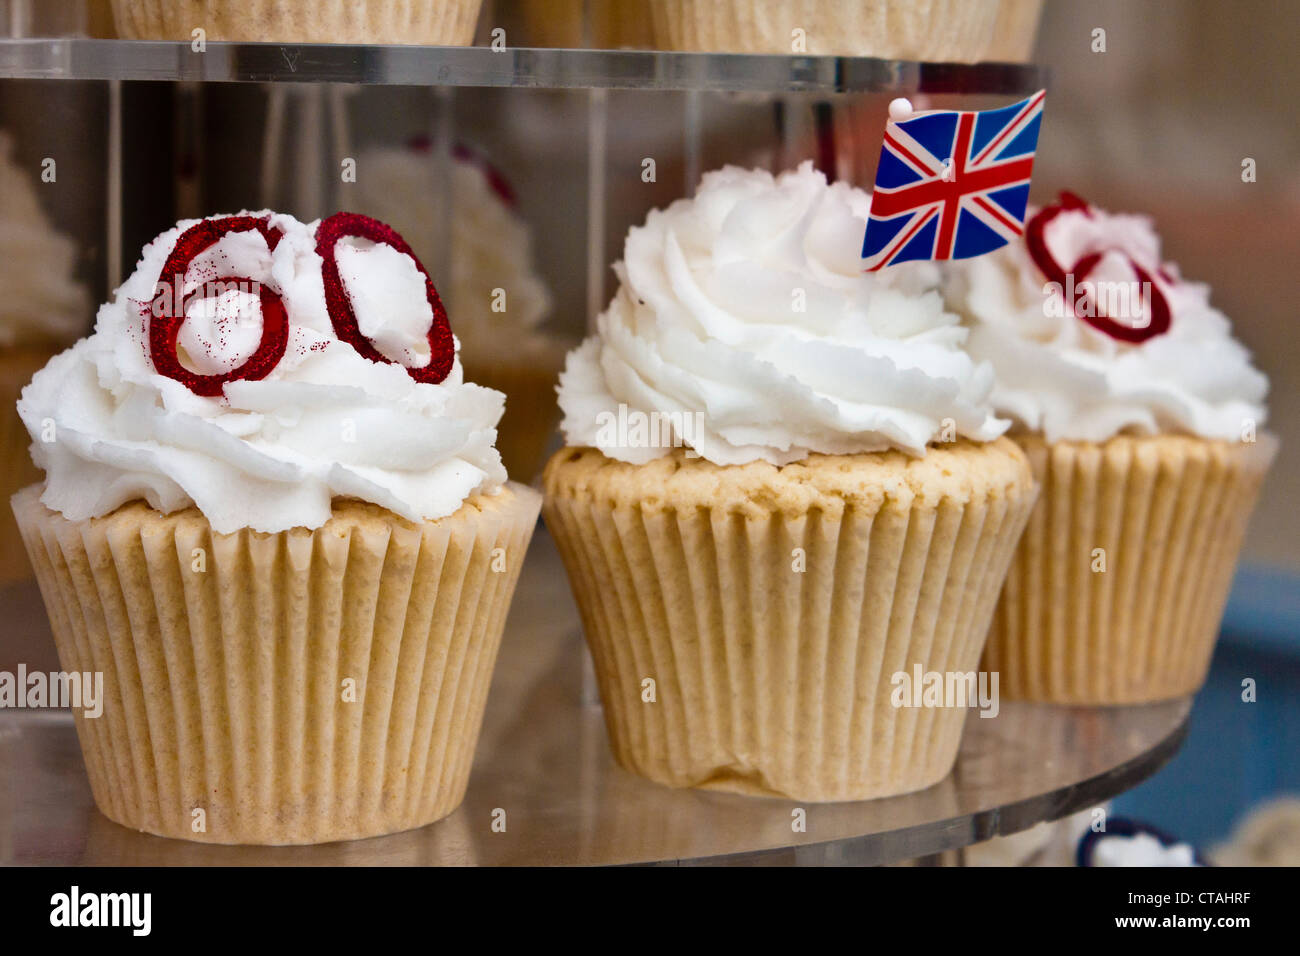 Königin Elizabeth II Diamant-Jubiläum Feier Feenkuchen oder Muffins in einer Bäckerei-Fenster. Stockfoto